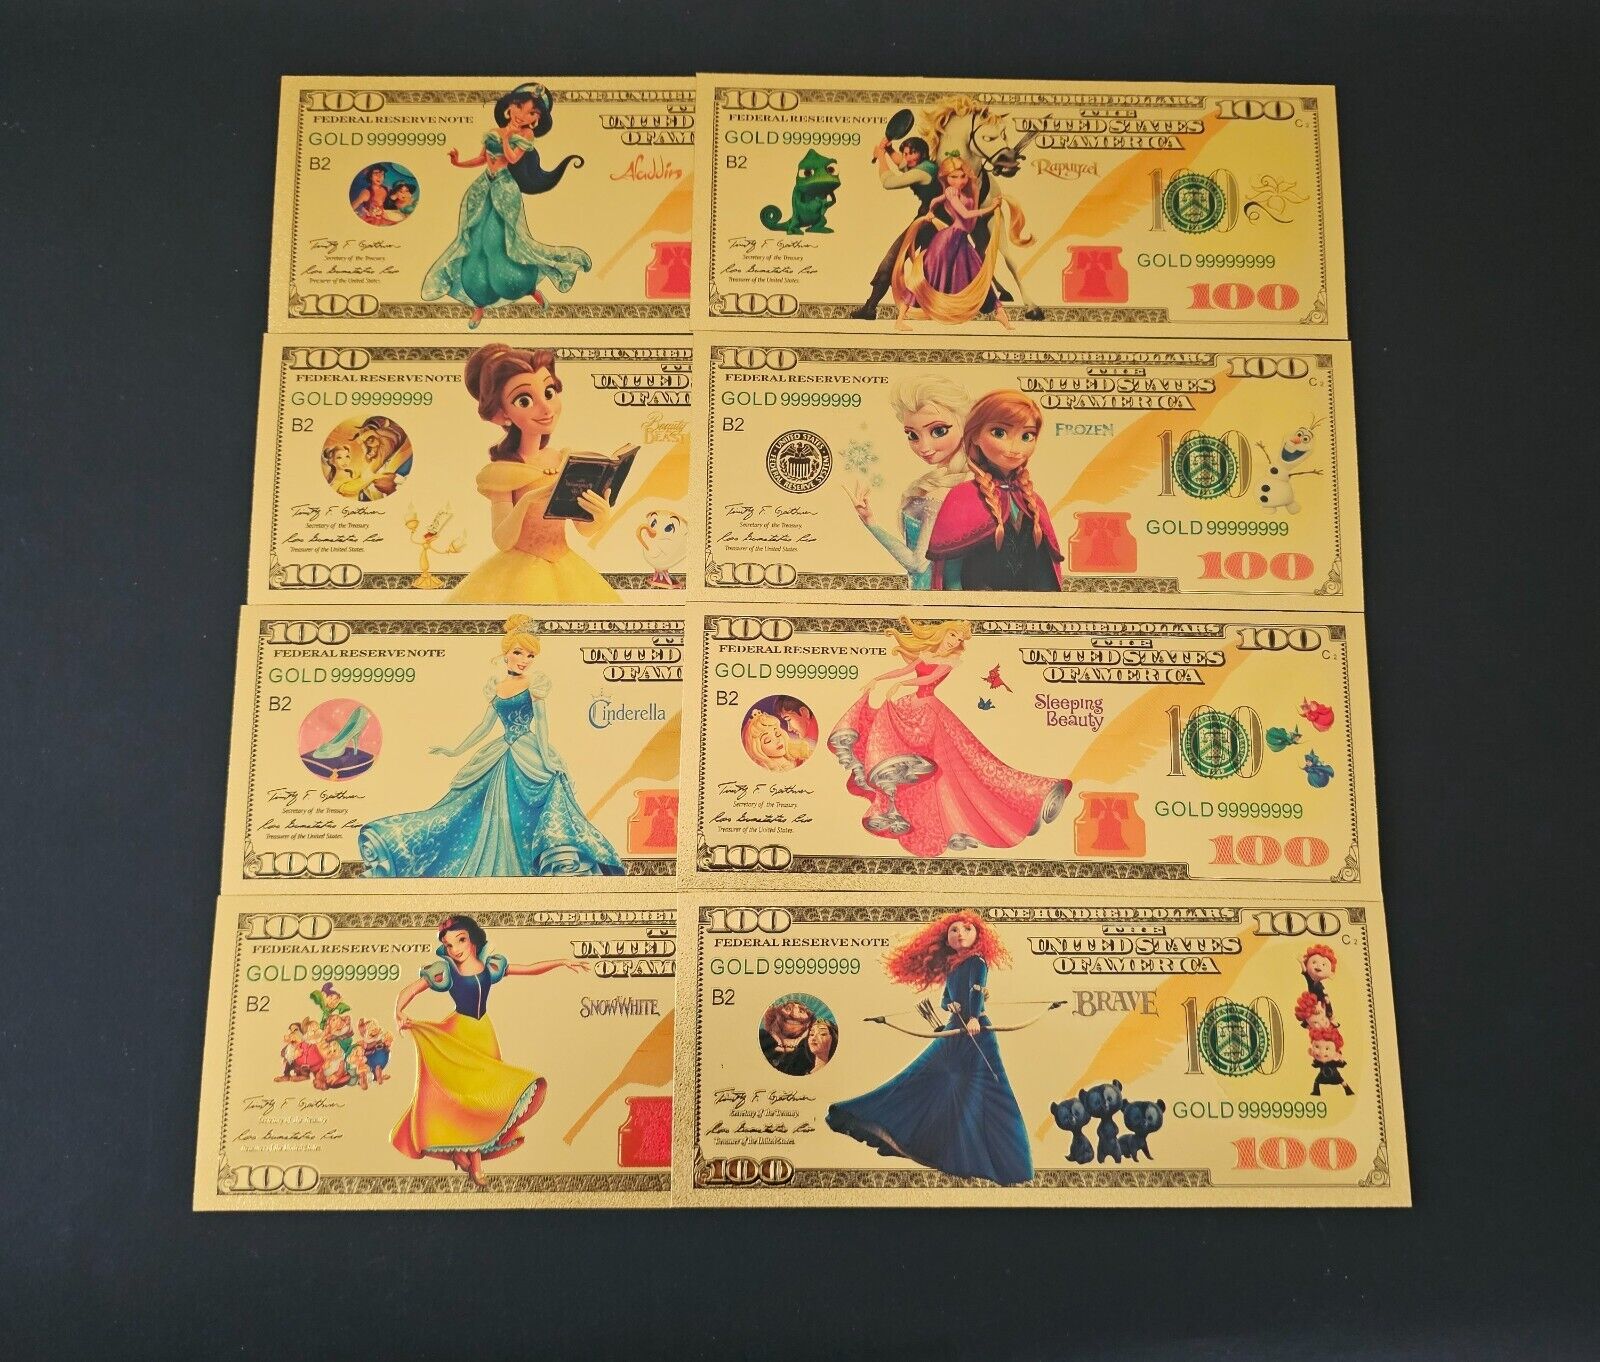 Disney Princesses complete set gold foil banknotes